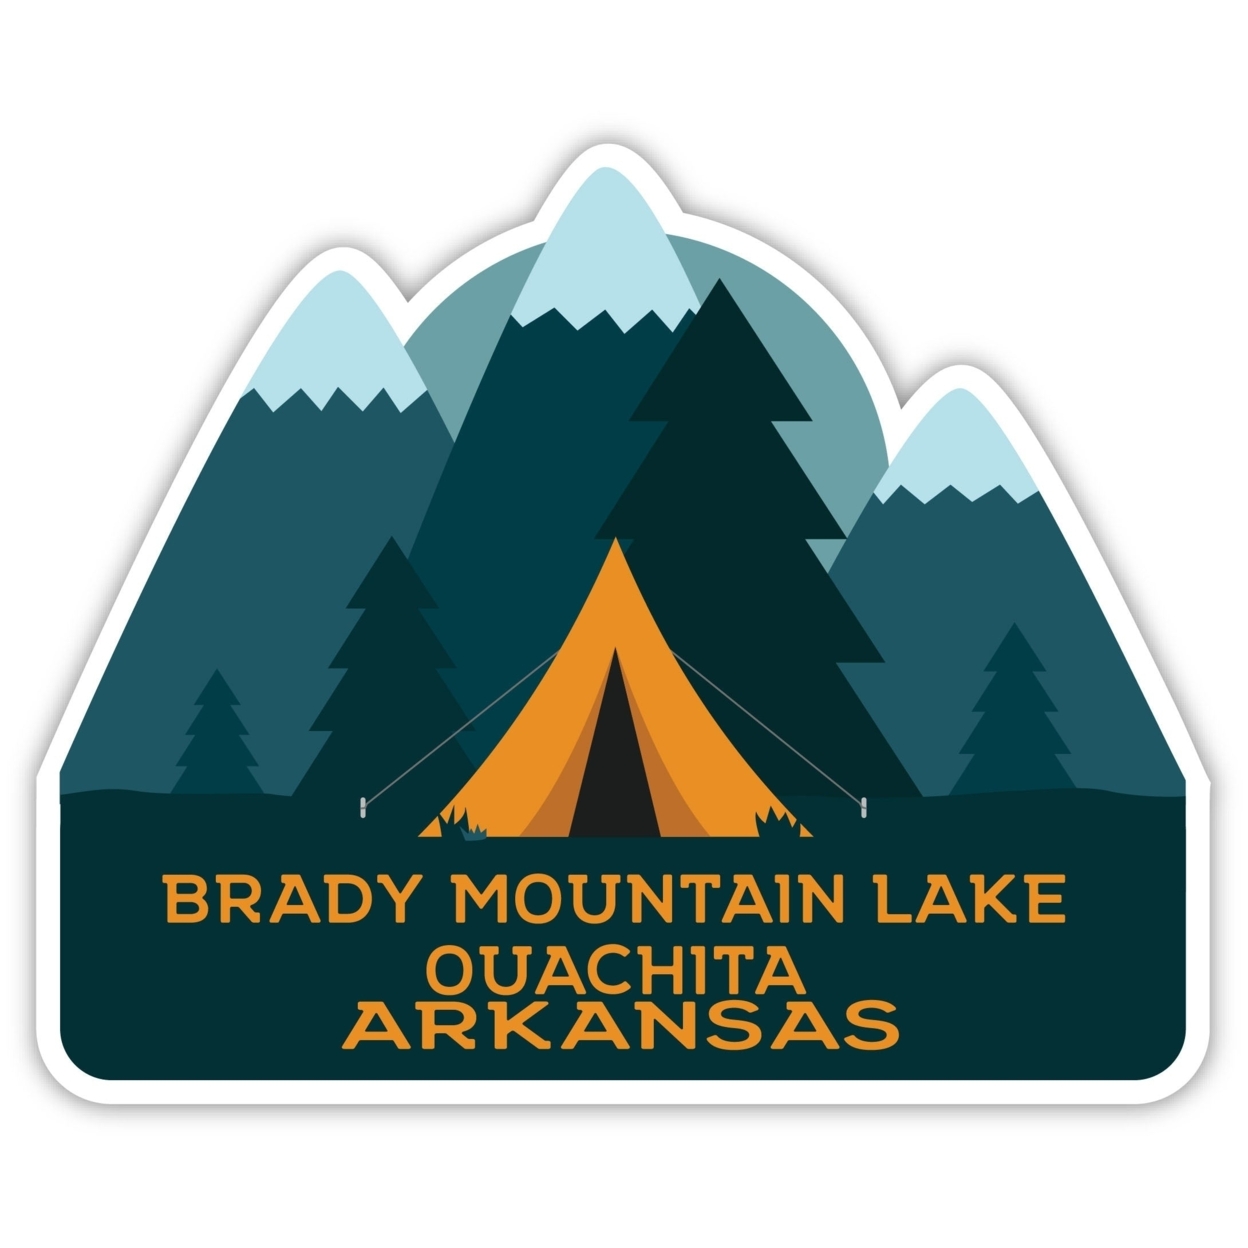 Brady Mountain Lake Ouachita Arkansas Souvenir Decorative Stickers (Choose Theme And Size) - 4-Pack, 8-Inch, Tent